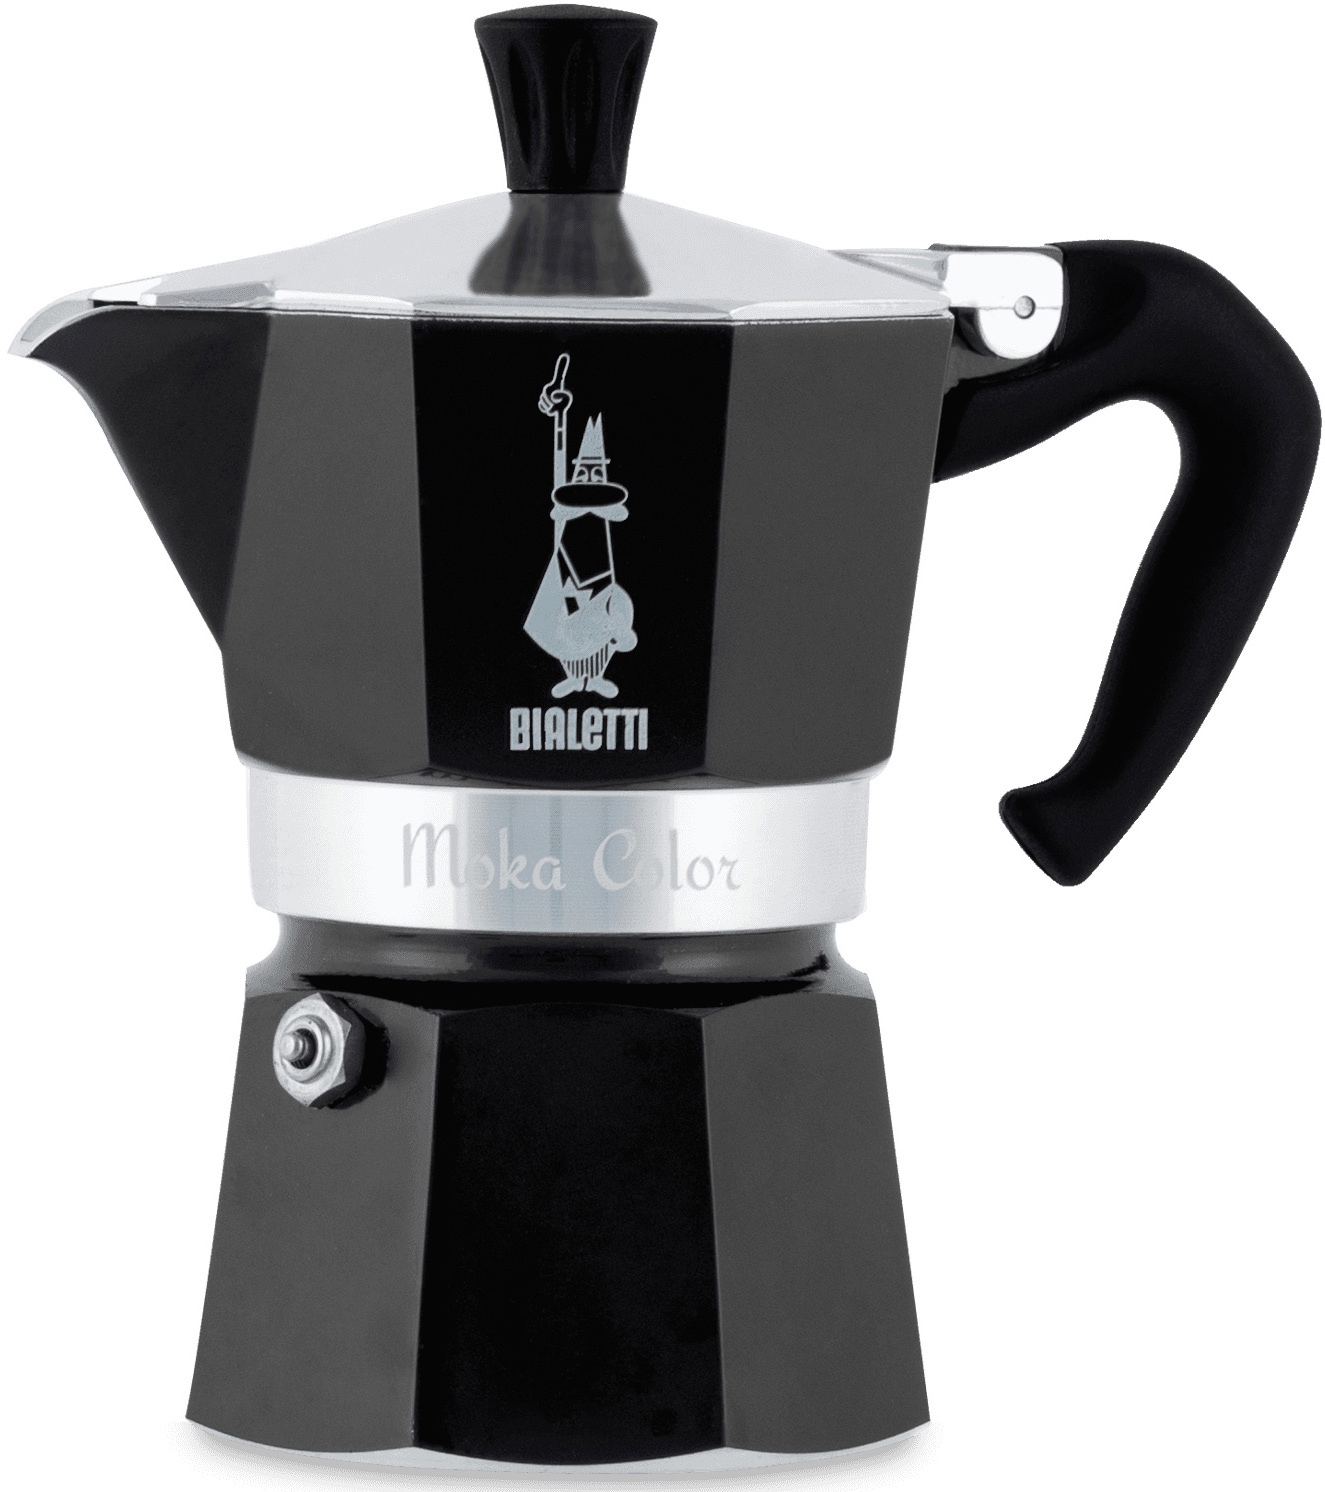 BIALETTI Espressokocher "Moka Express", 0,13 l Kaffeekanne, Aluminium, in hochwertiger Lackierung, 1 Tasse